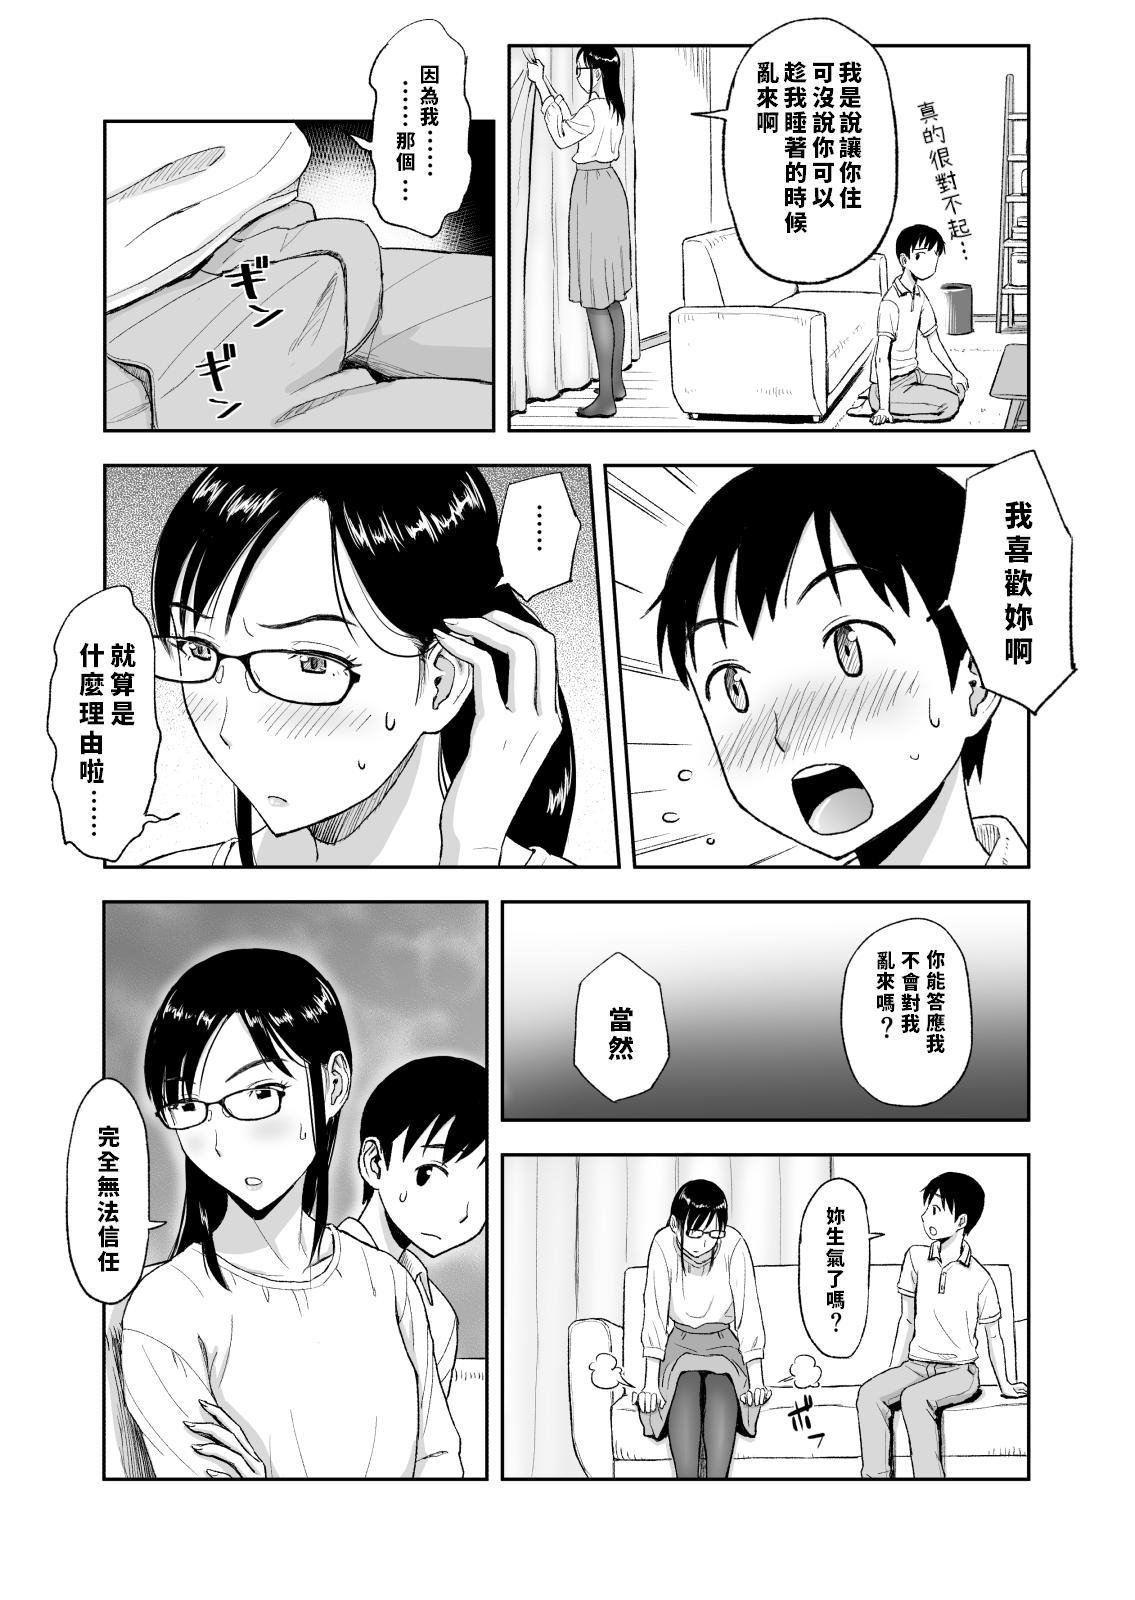 Para Konkatsu ni Hagemu Oba wa Oi ni Motomerarete Choppiri Ureshii. - Original Cheating - Page 12